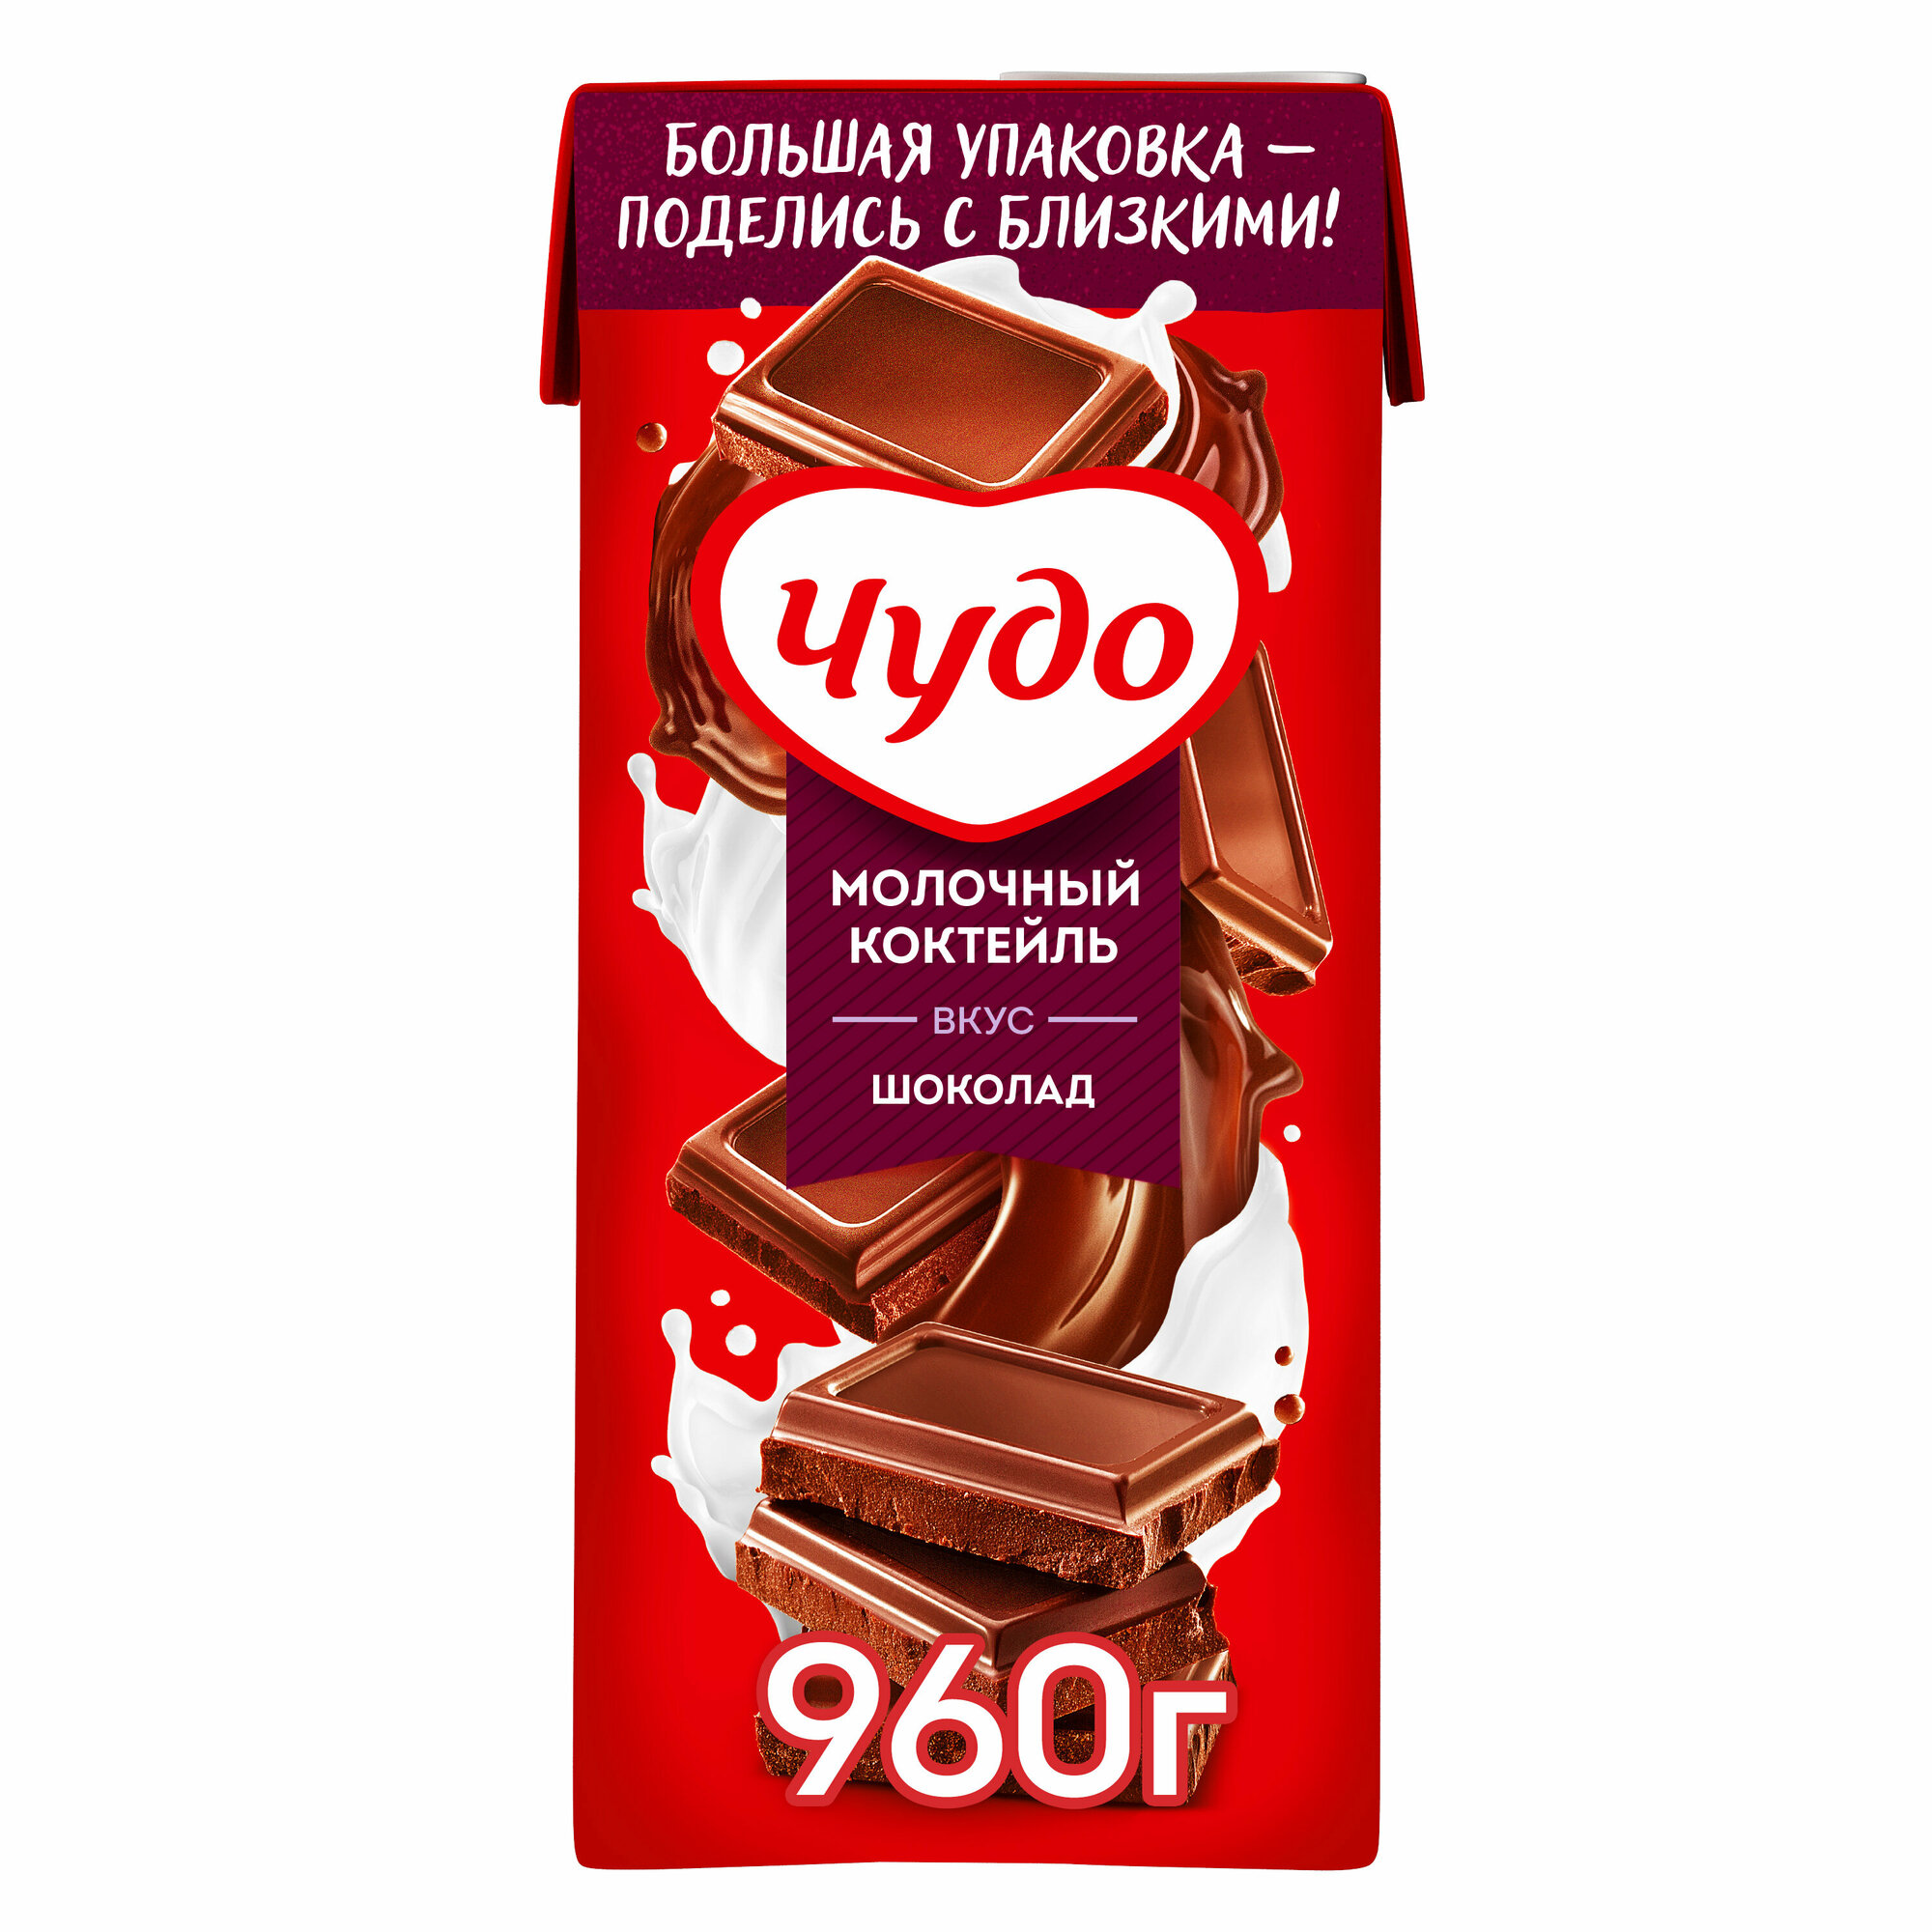 Коктейль молочный Чудо, со вкусом шоколад, 2%, 960г